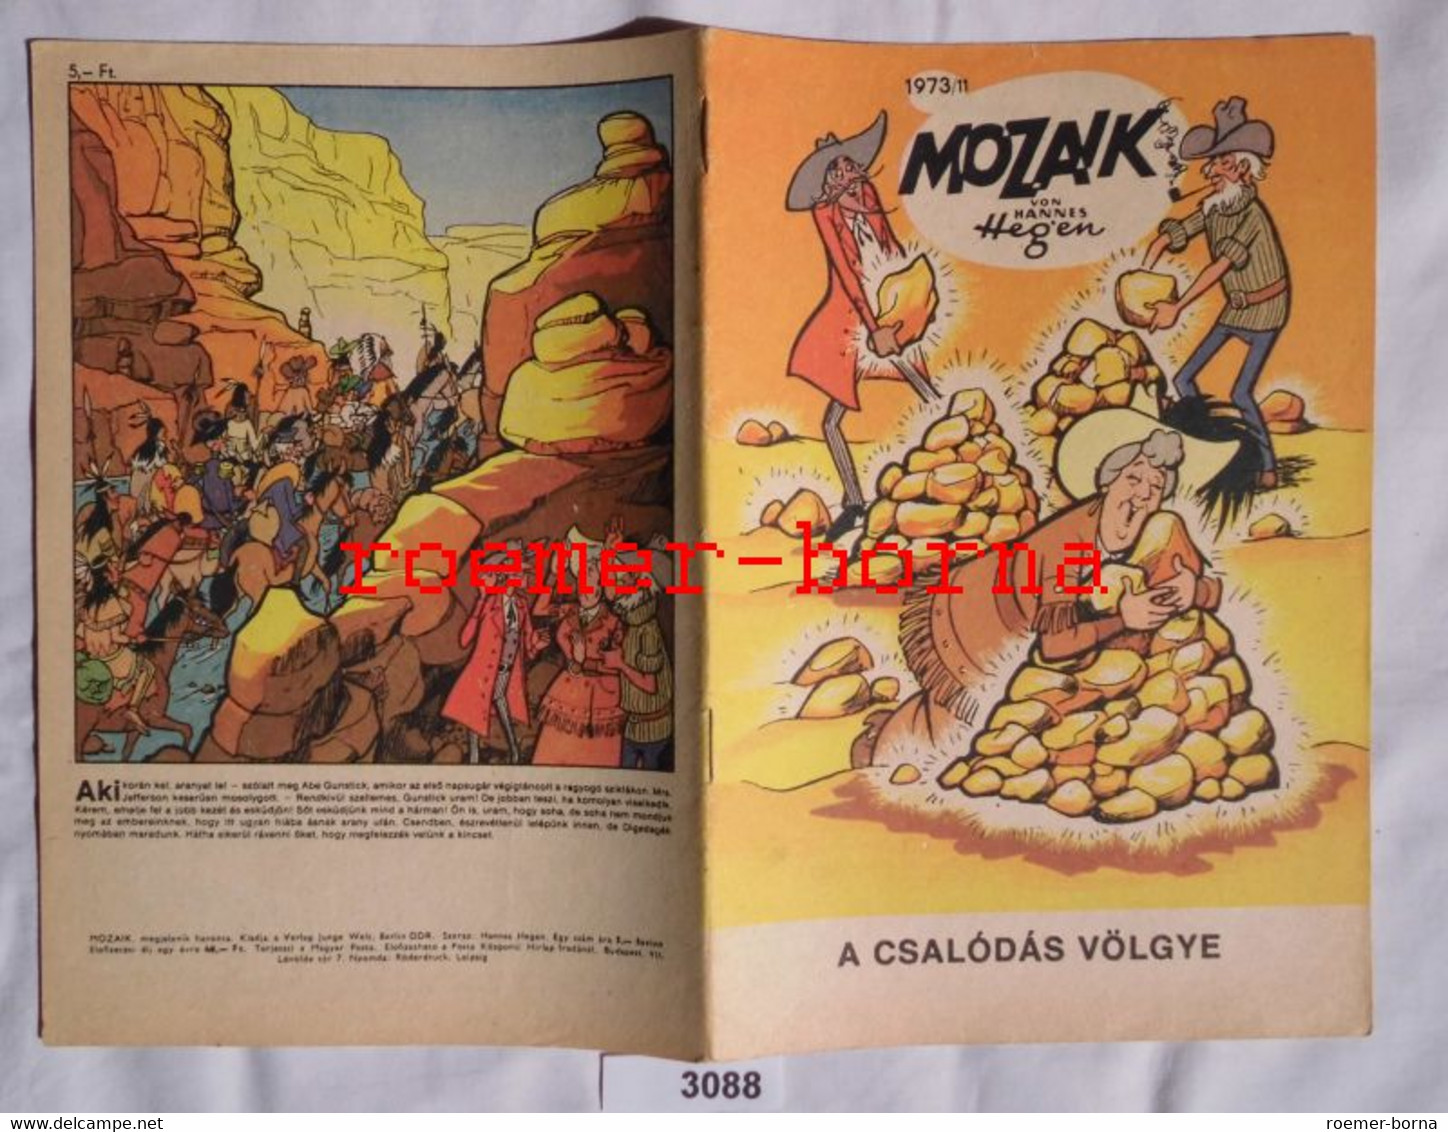 Mozaik Mosaik Von Hannes Hegen Seltene Export Ausgabe Für Ungarn Nr 1973/11 (entspricht Heft 193) - Digedags